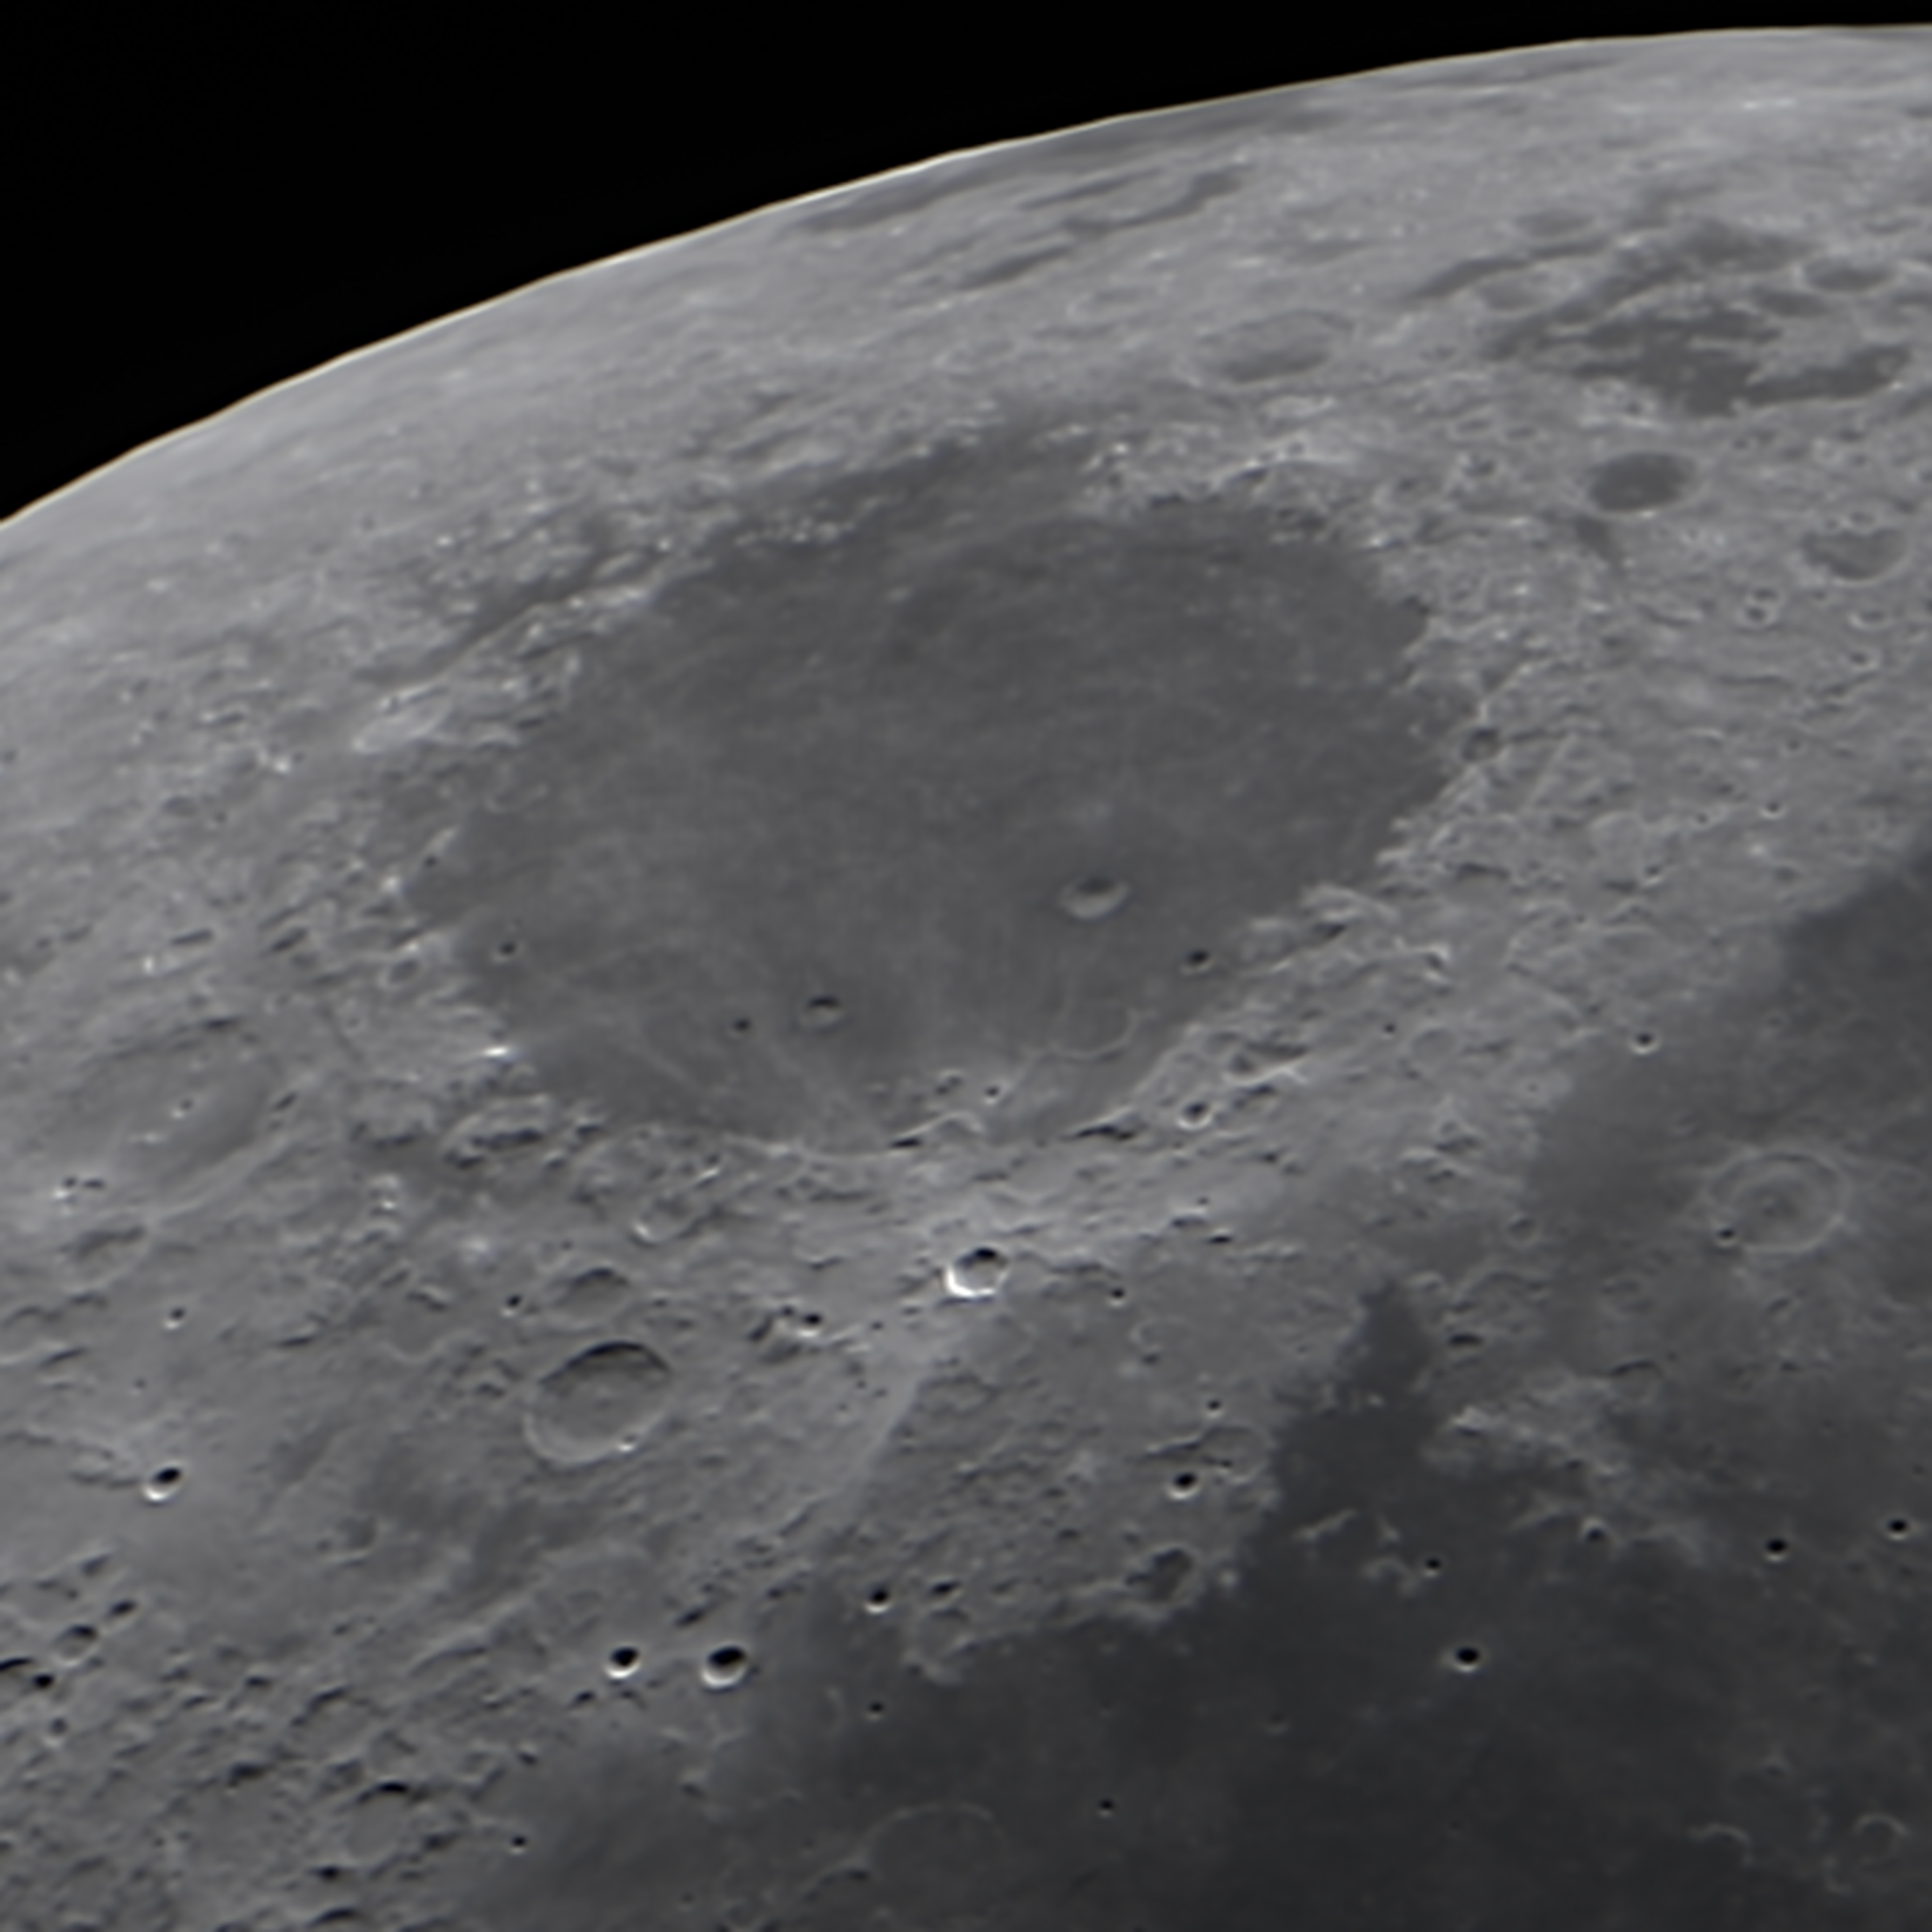 telescopio para ver superficie lunar